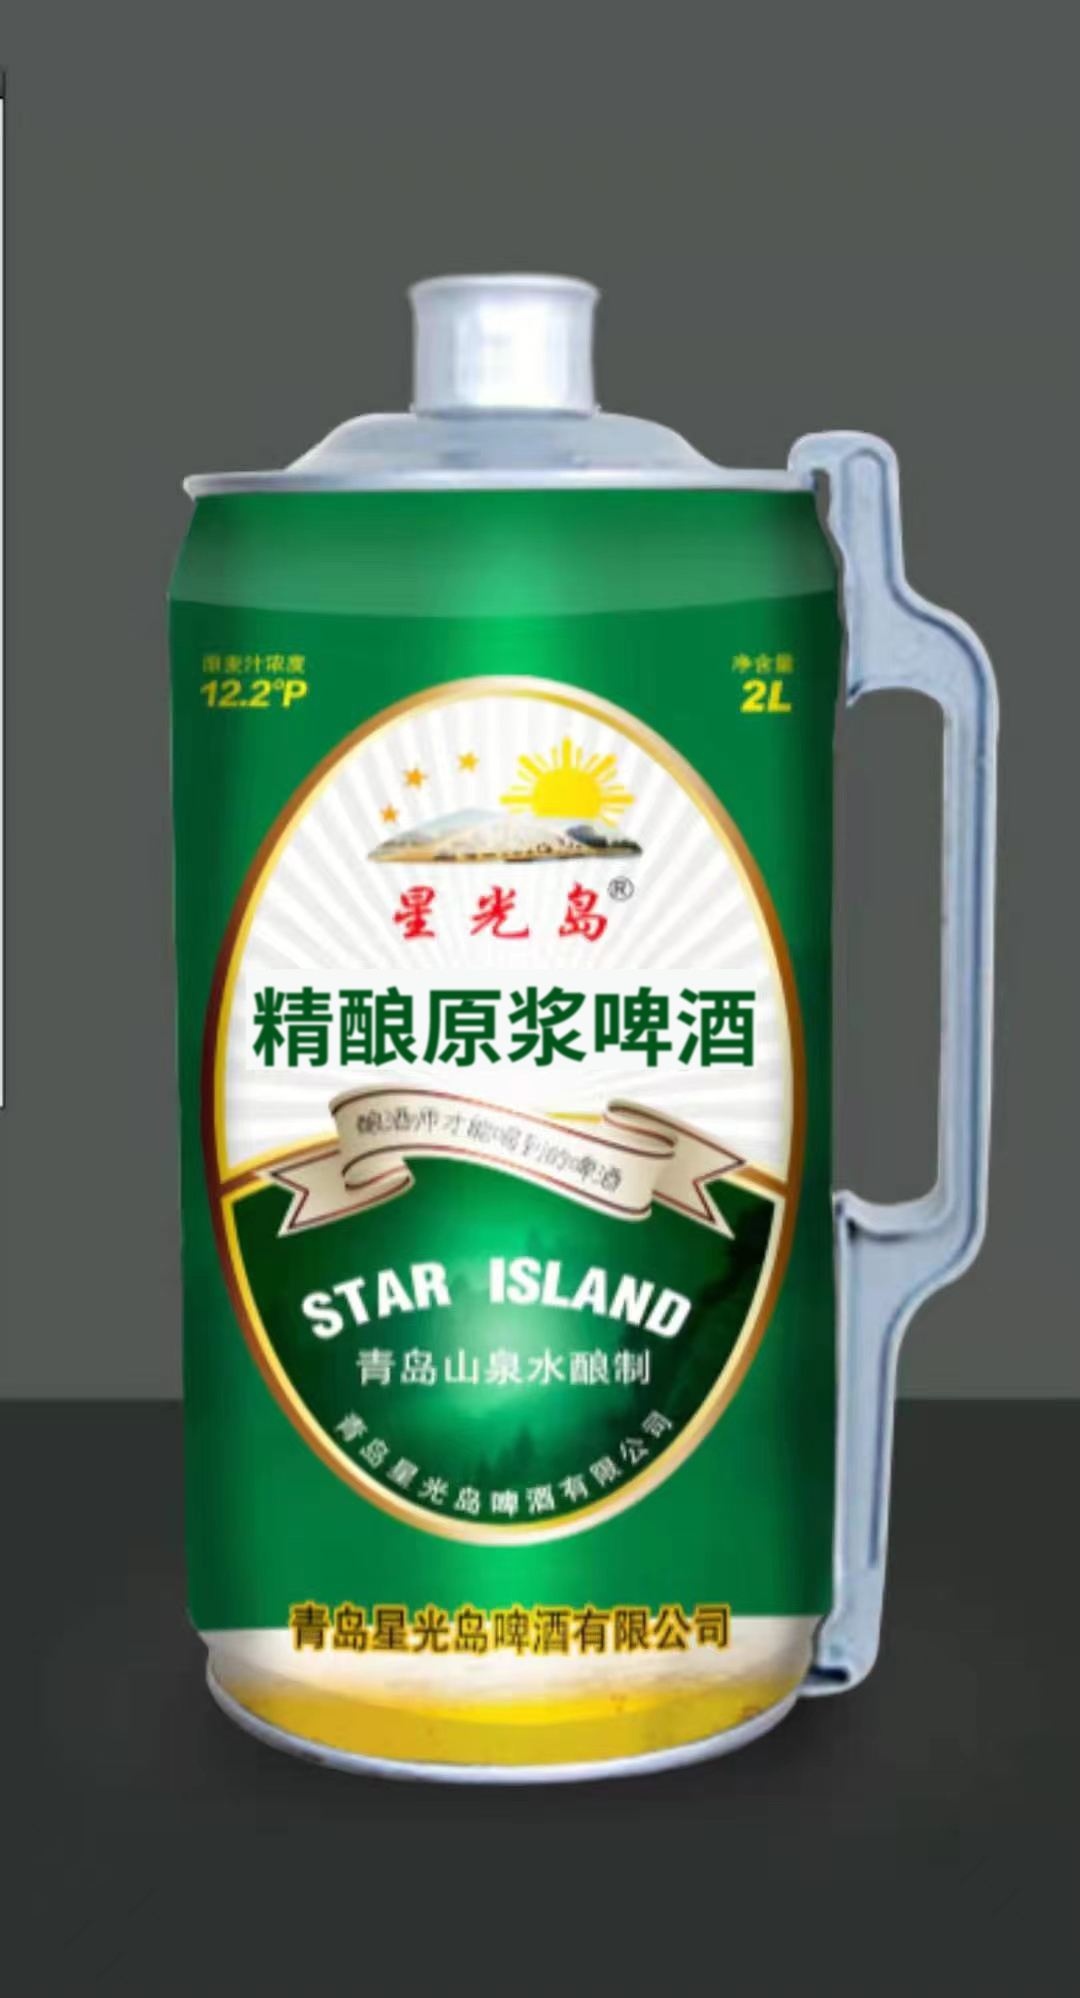 2L绿罐装星光岛原浆啤酒